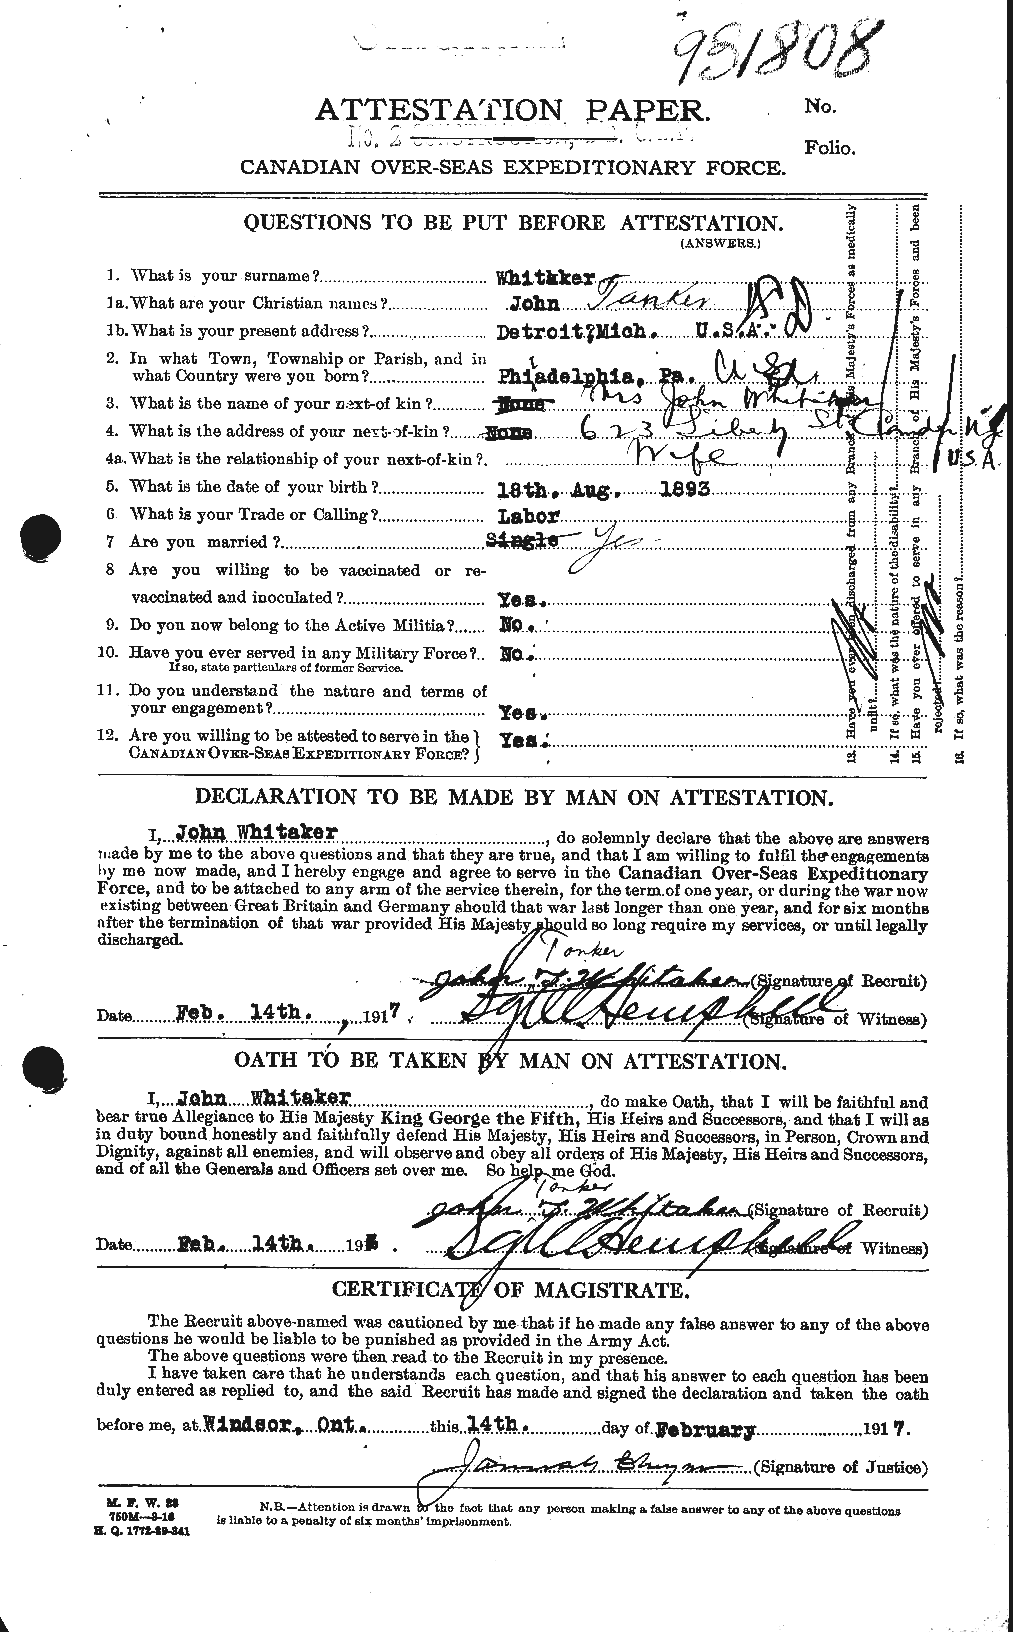 Dossiers du Personnel de la Première Guerre mondiale - CEC 668834a